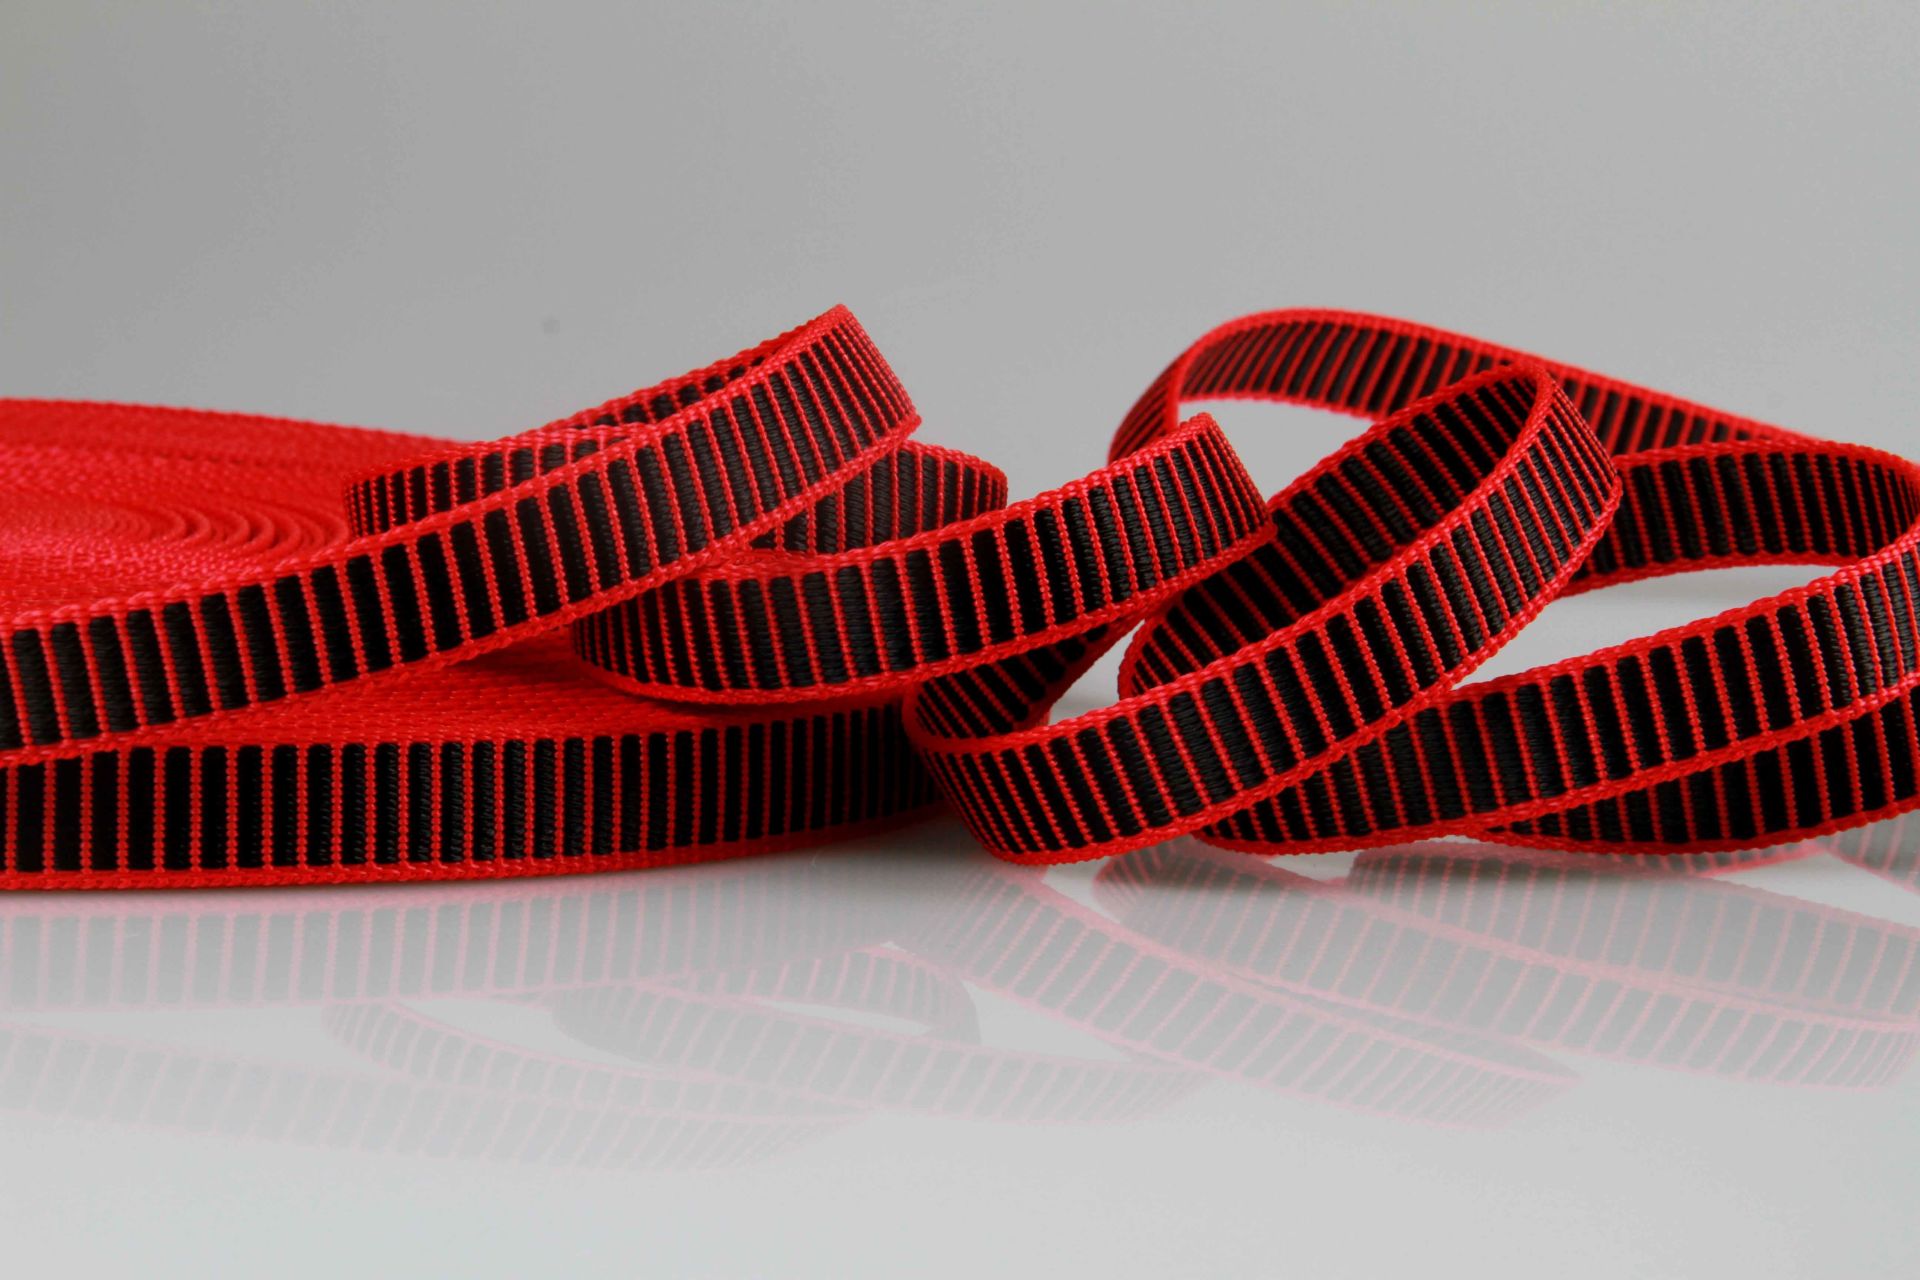 Gurtware aus PP mit 3D Effekt | 20 mm Breite | 50 m Rollenware | Griffig und strapazierfähig | Rot mit schwarzen Balken